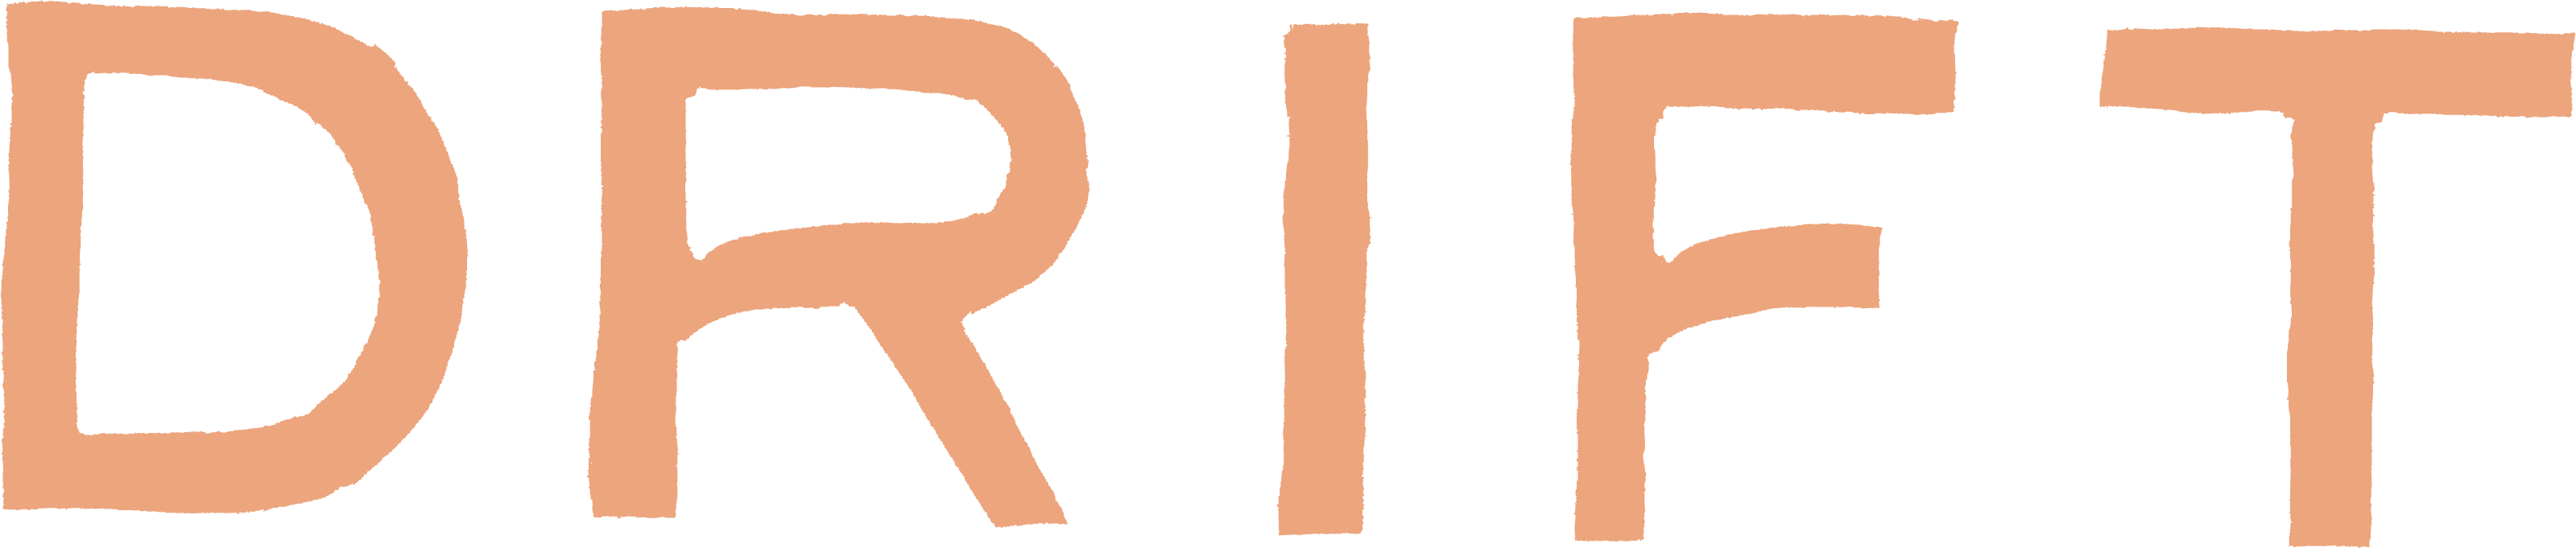 Drift logo image alt text